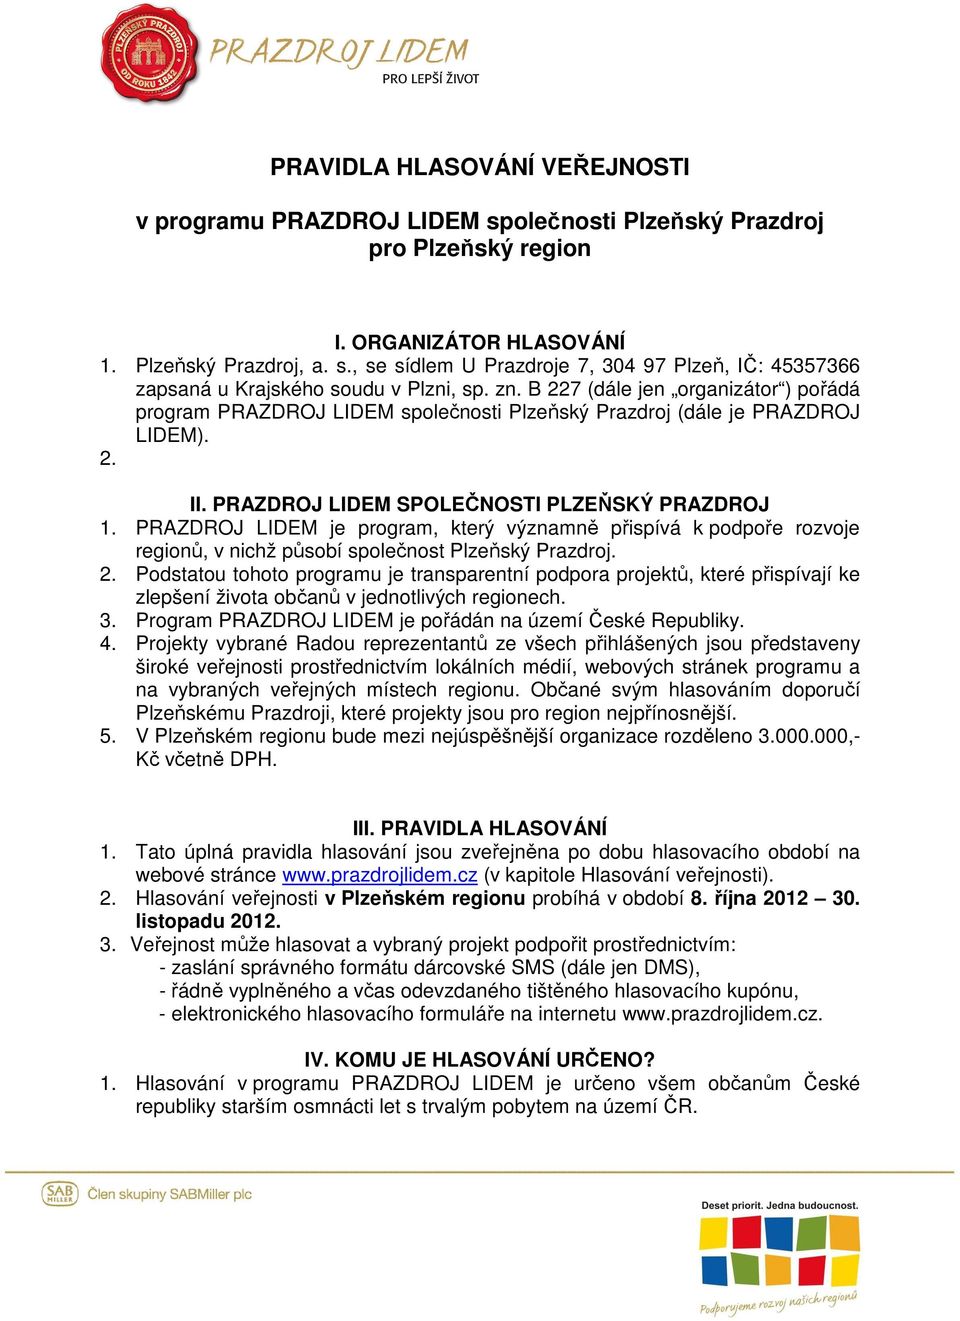 PRAZDROJ LIDEM je program, který významně přispívá k podpoře rozvoje regionů, v nichž působí společnost Plzeňský Prazdroj. 2.